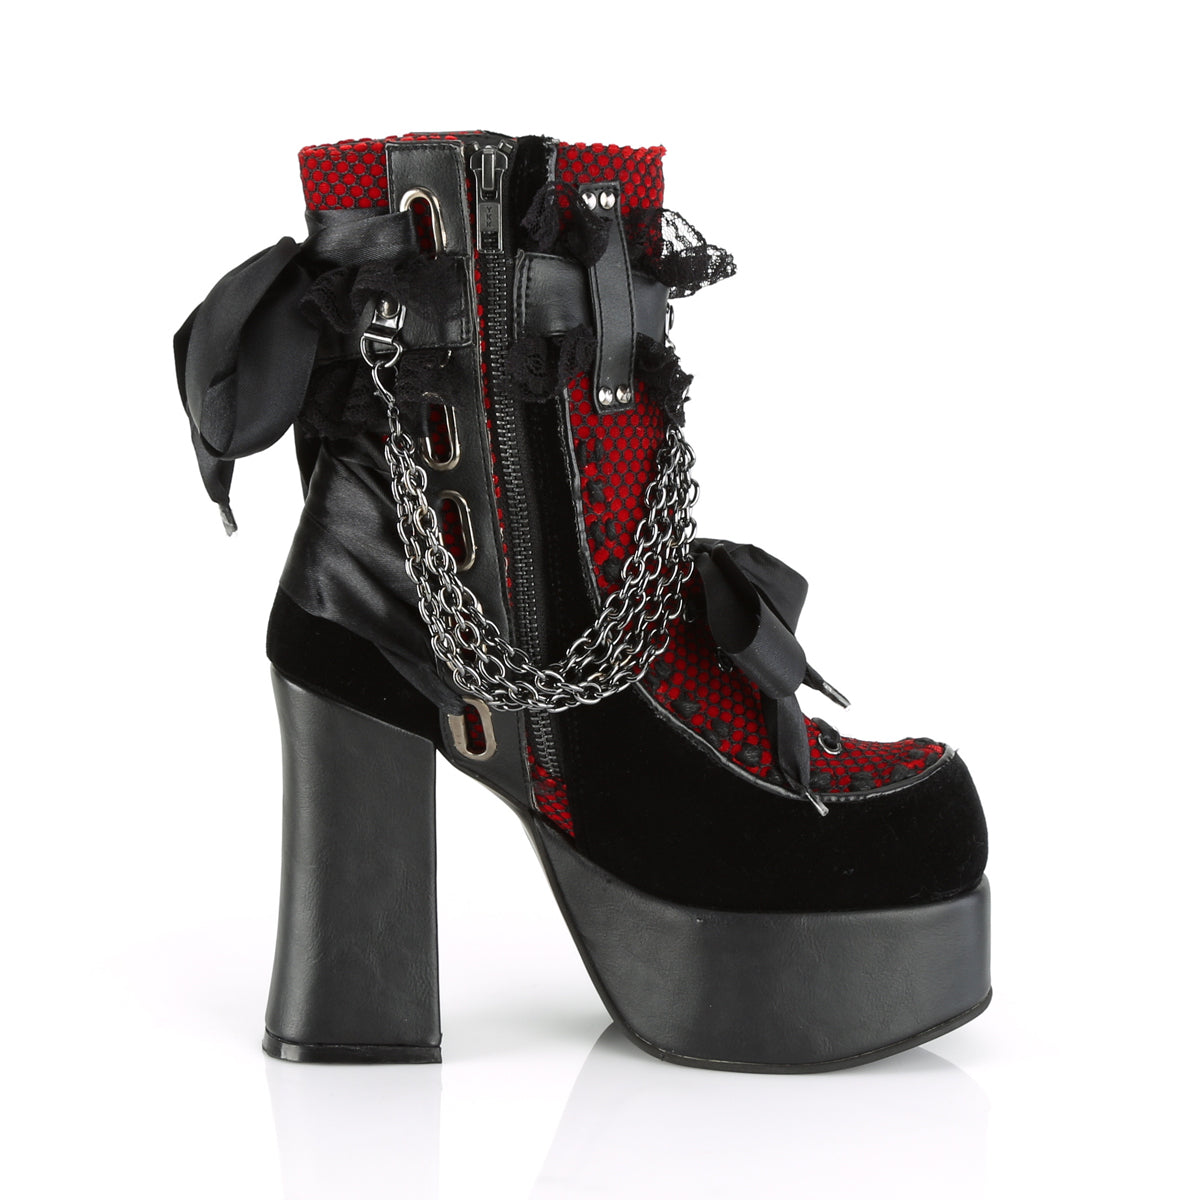 CHARADE-110 Demonia Black V Le-Red-Black Velvet-Fishnet Overlay Women's Ankle Boots [Demonia Cult Alternative Footwear]